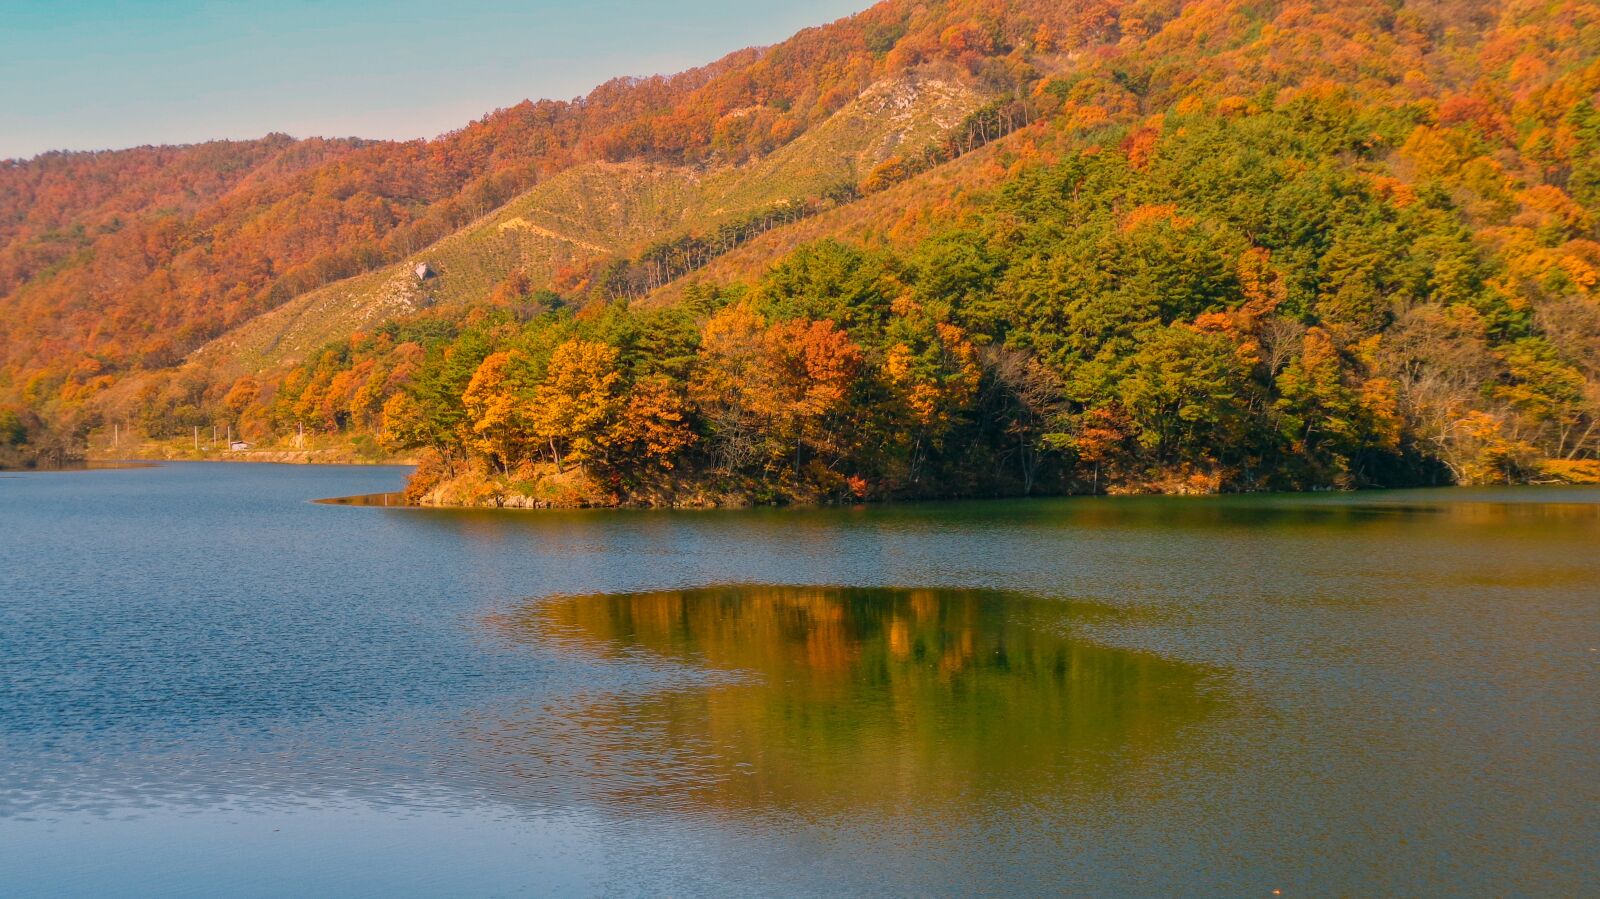 Sony Cyber-shot DSC-W830 sample photo. Lake, sun, nature photography